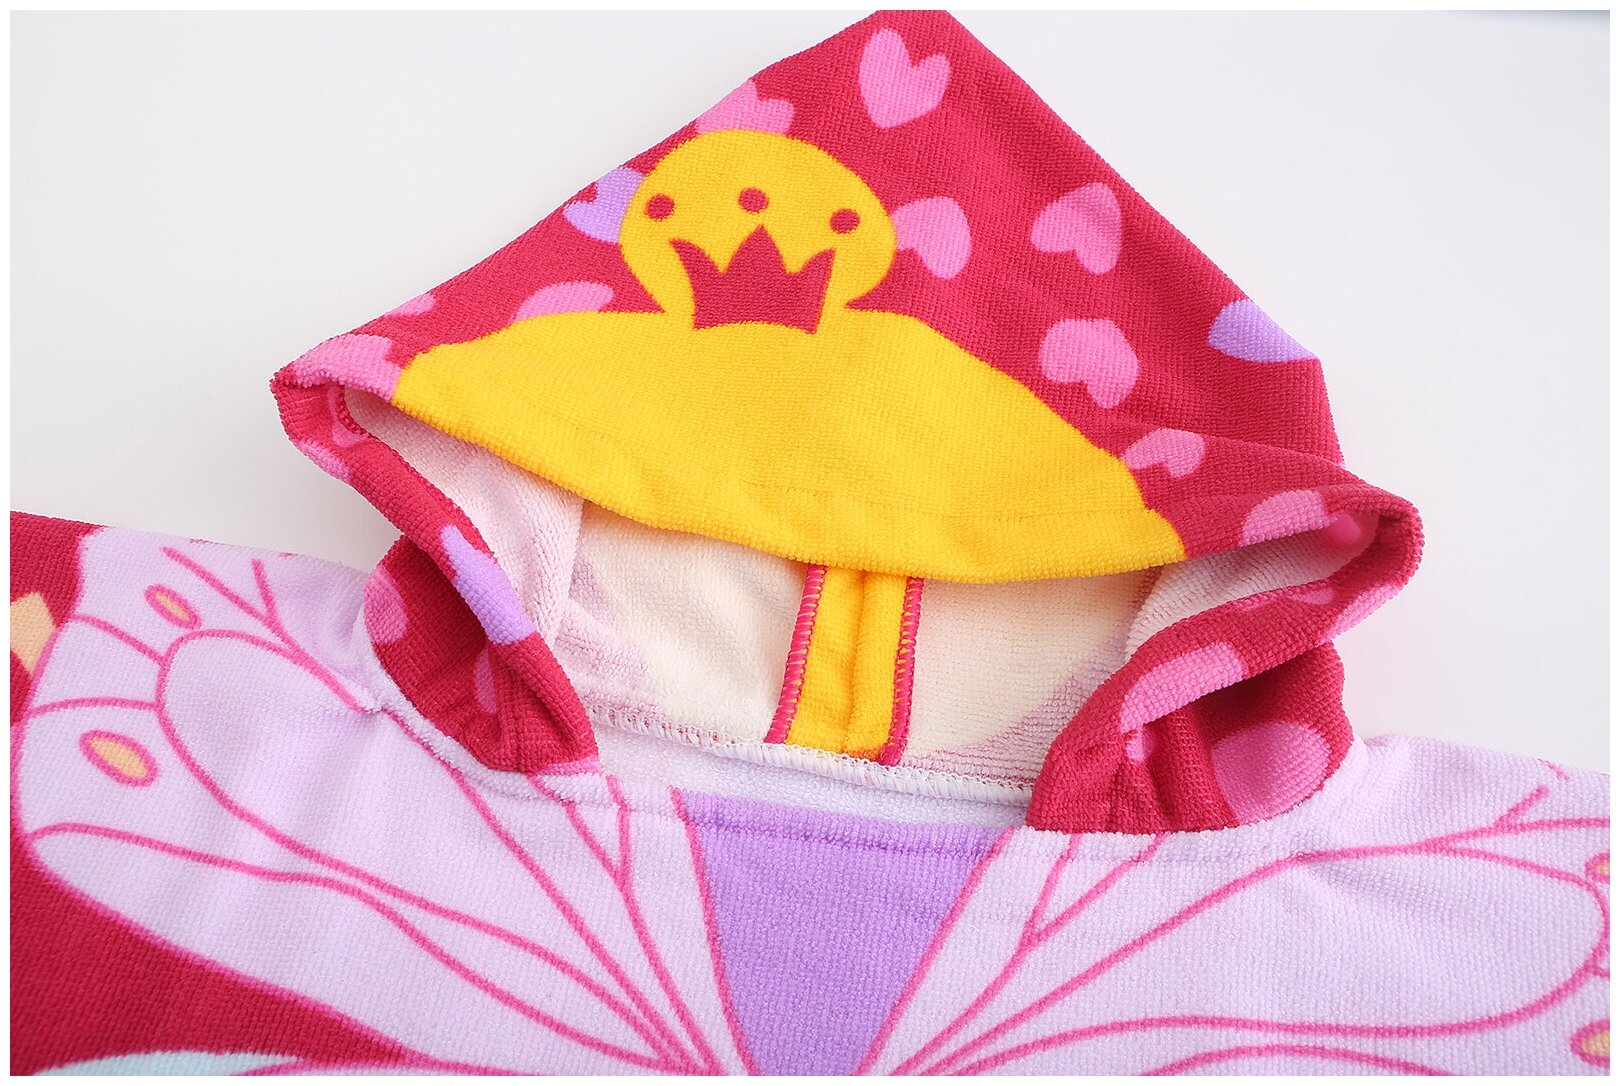 Полотенце детское с капюшоном, халат пончо детский Эврика полотенце банное, для спорта, пляжное, универсальное 60х120 см (Фея) подарок